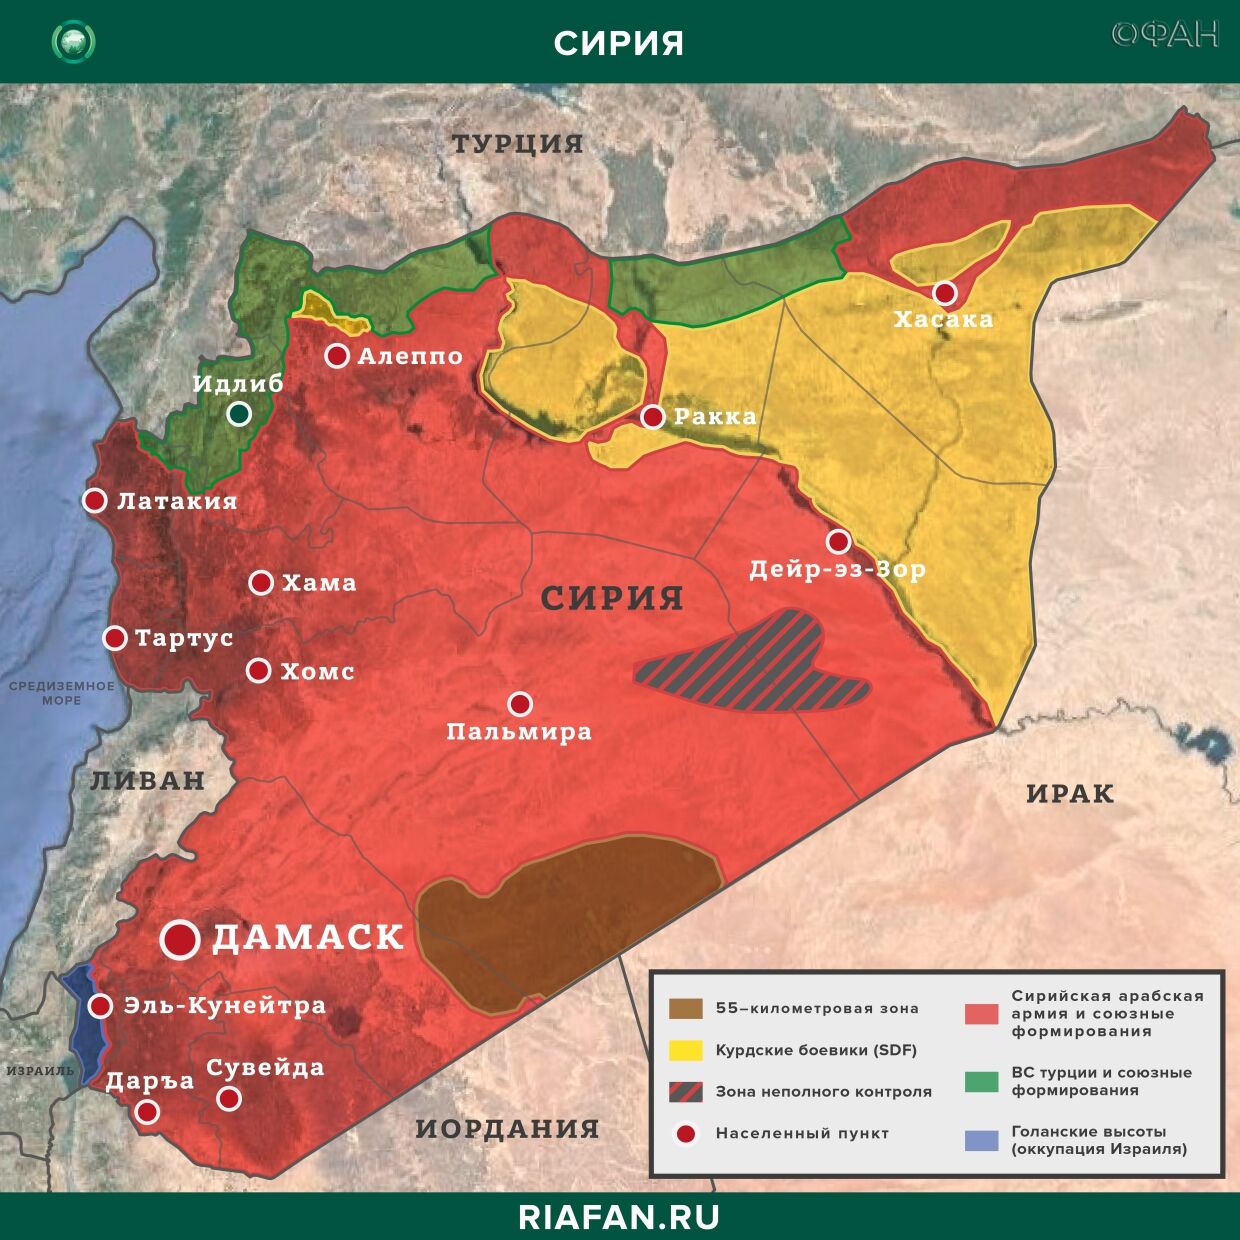 Noticias de Siria 28 Mayo 22.30: беспорядочная стрельба боевиков в Африне, Турция заявила о нейтрализации 3 членов РПК в Ираке